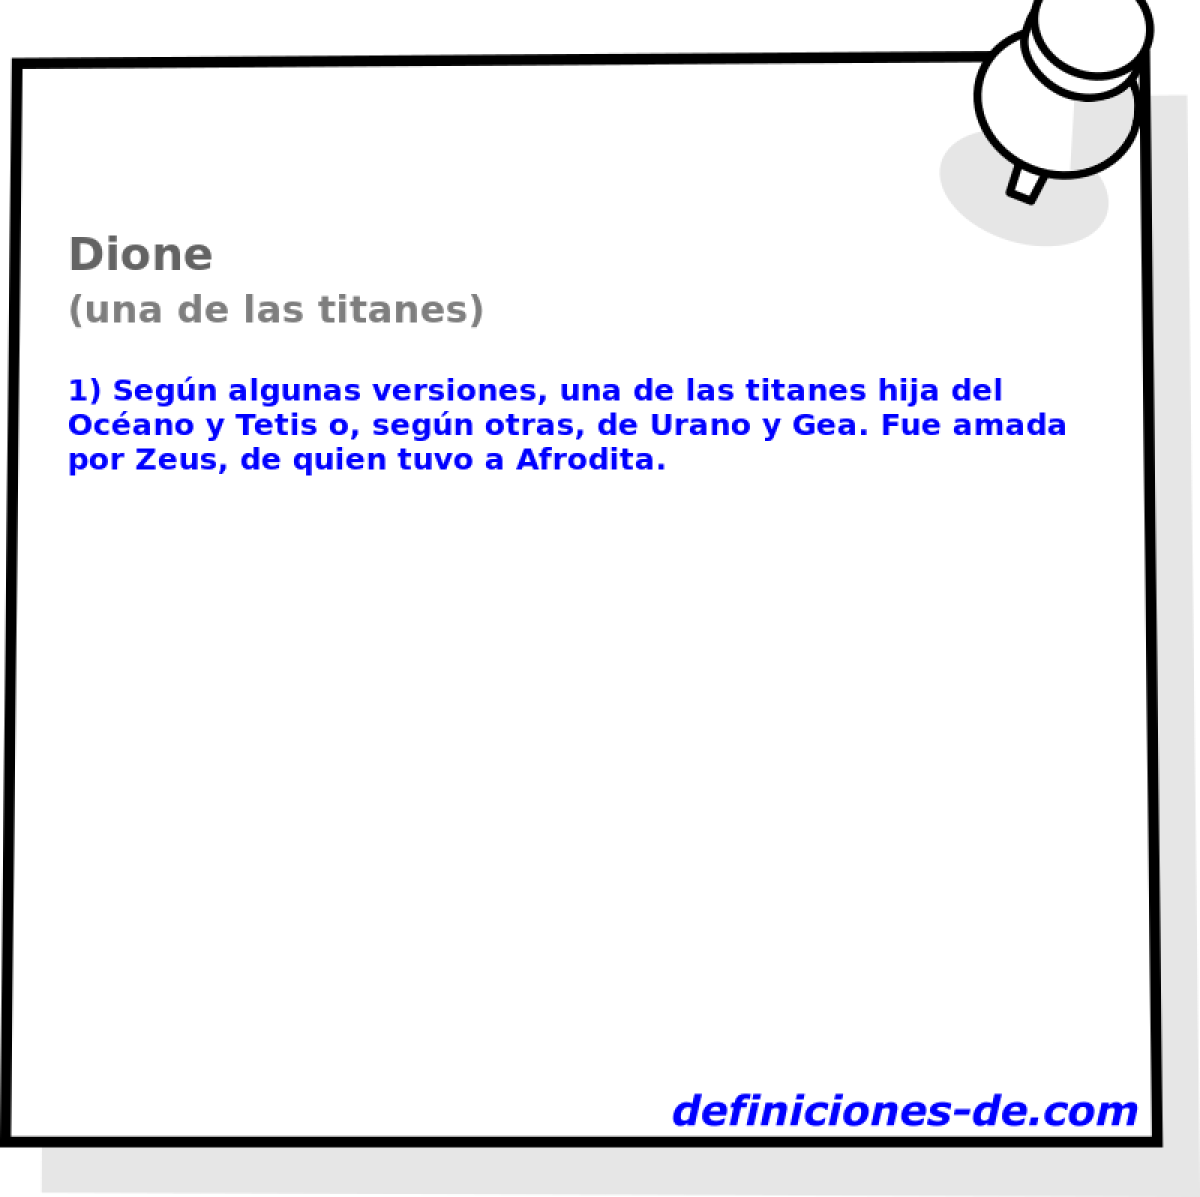 Dione (una de las titanes)